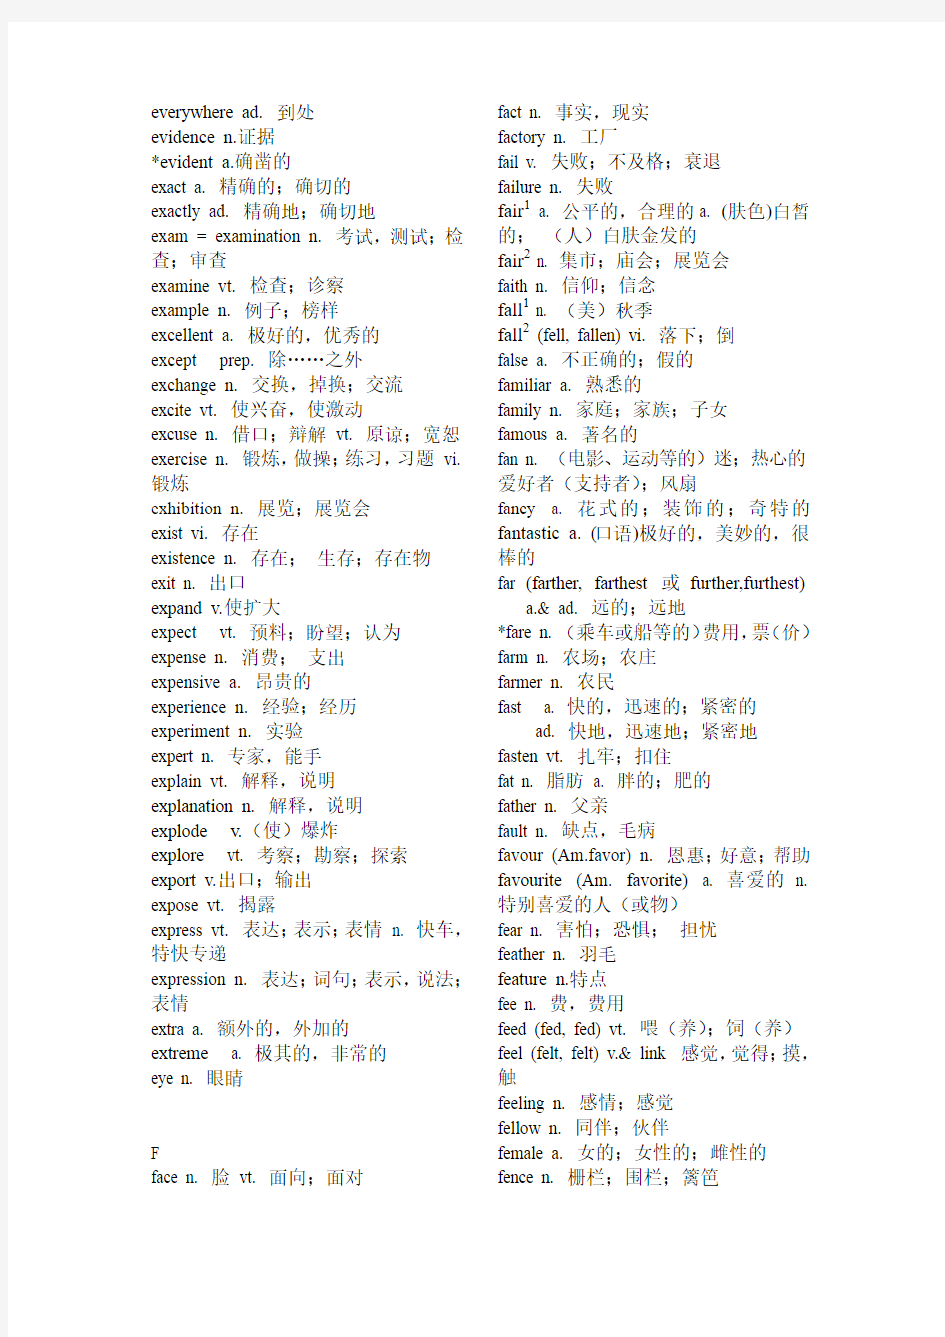 2011年高考英语词汇表(字母EFG开头)